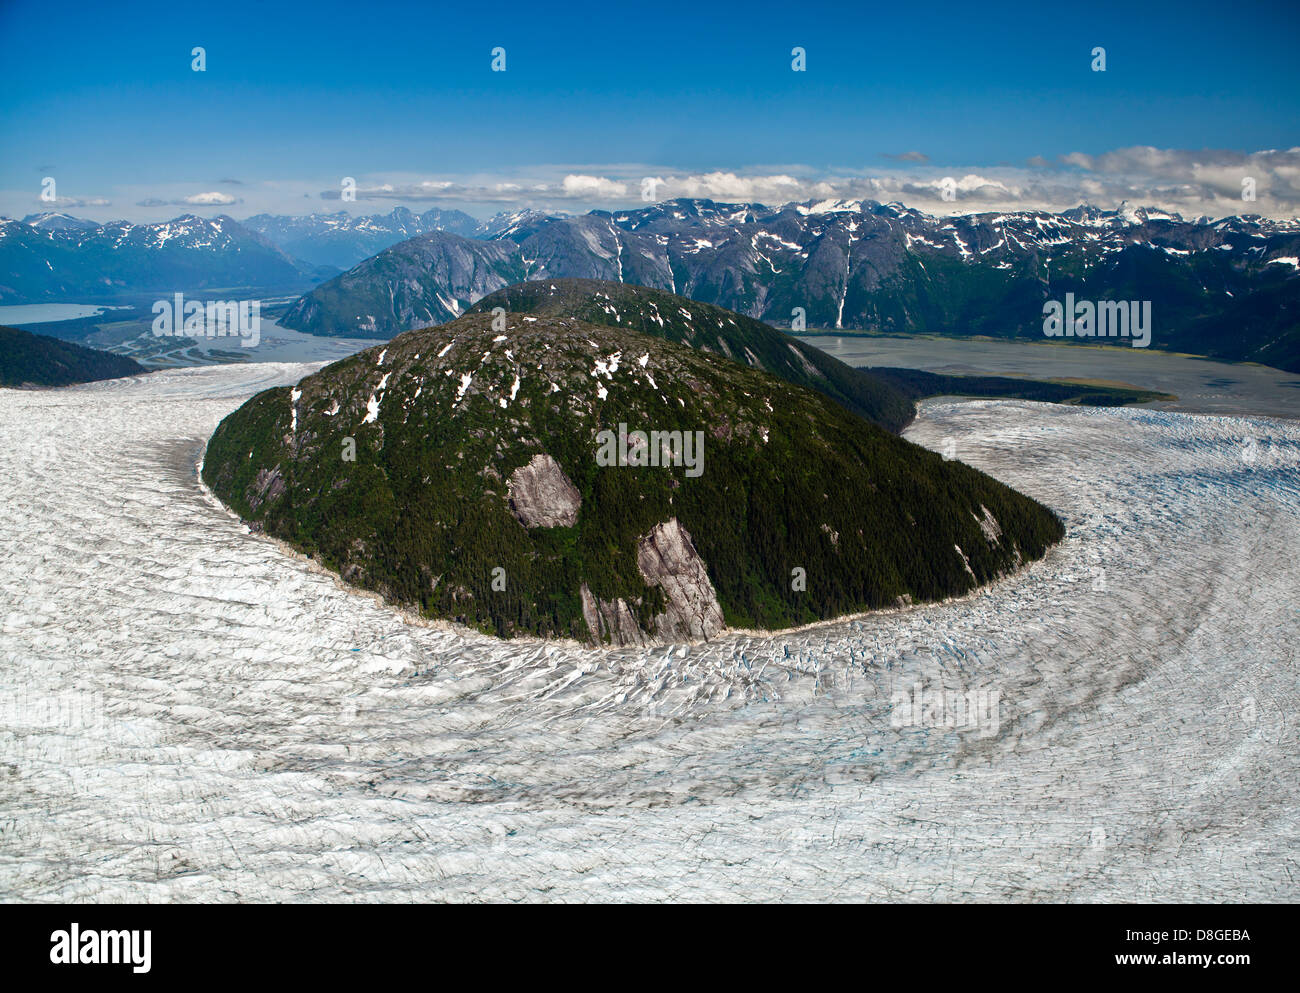 Immagine da un piano di Alaskan wilderness. Bellissimo paesaggio nel bel mezzo del nulla. Il mondo naturale a sua migliori. Foto Stock